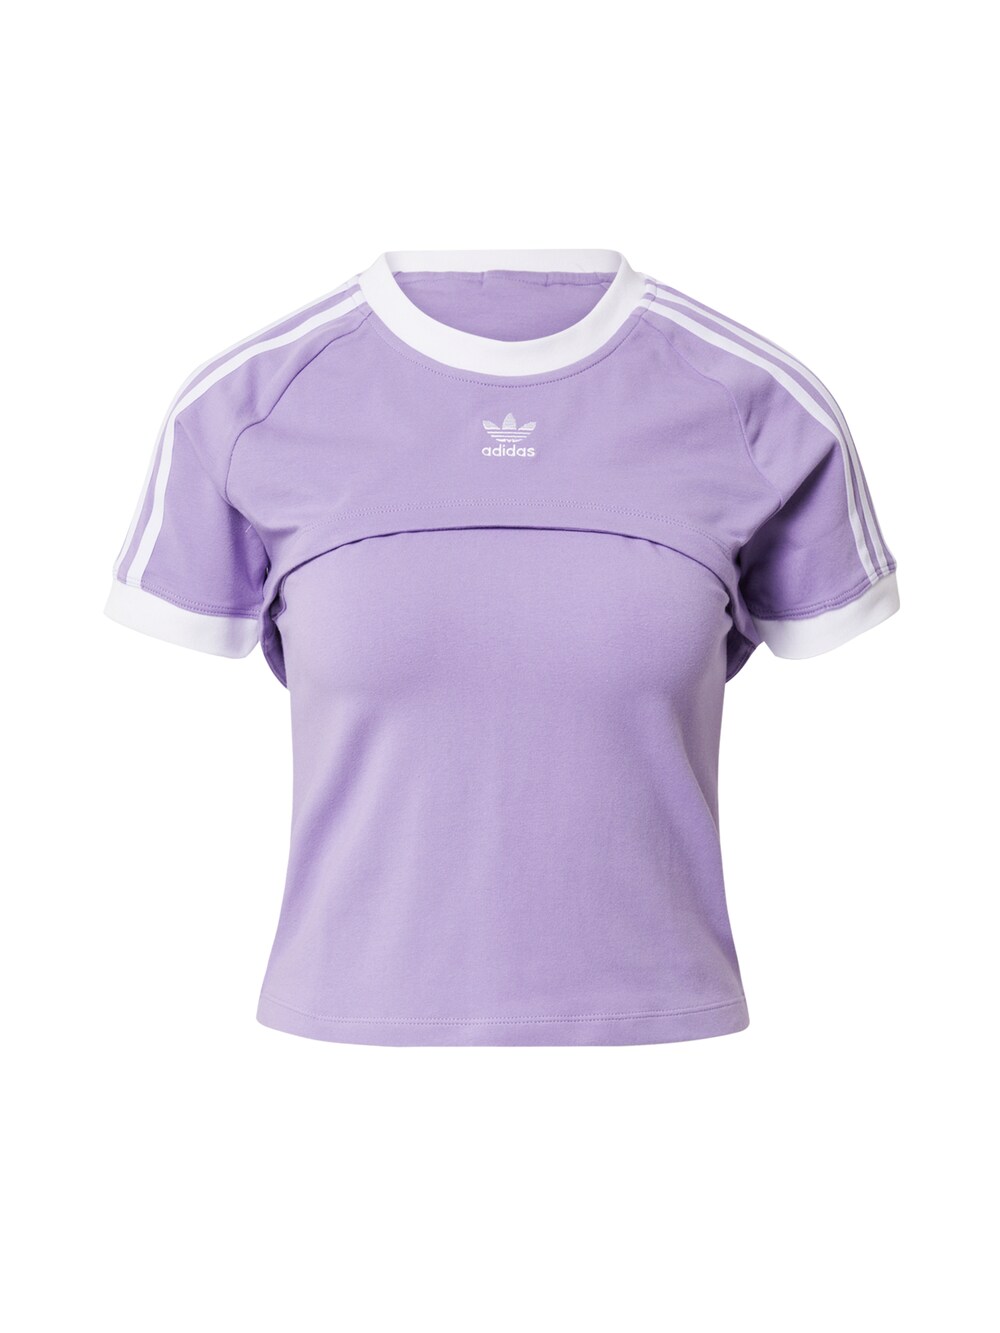 Рубашка Adidas Always Original, фиолетовый